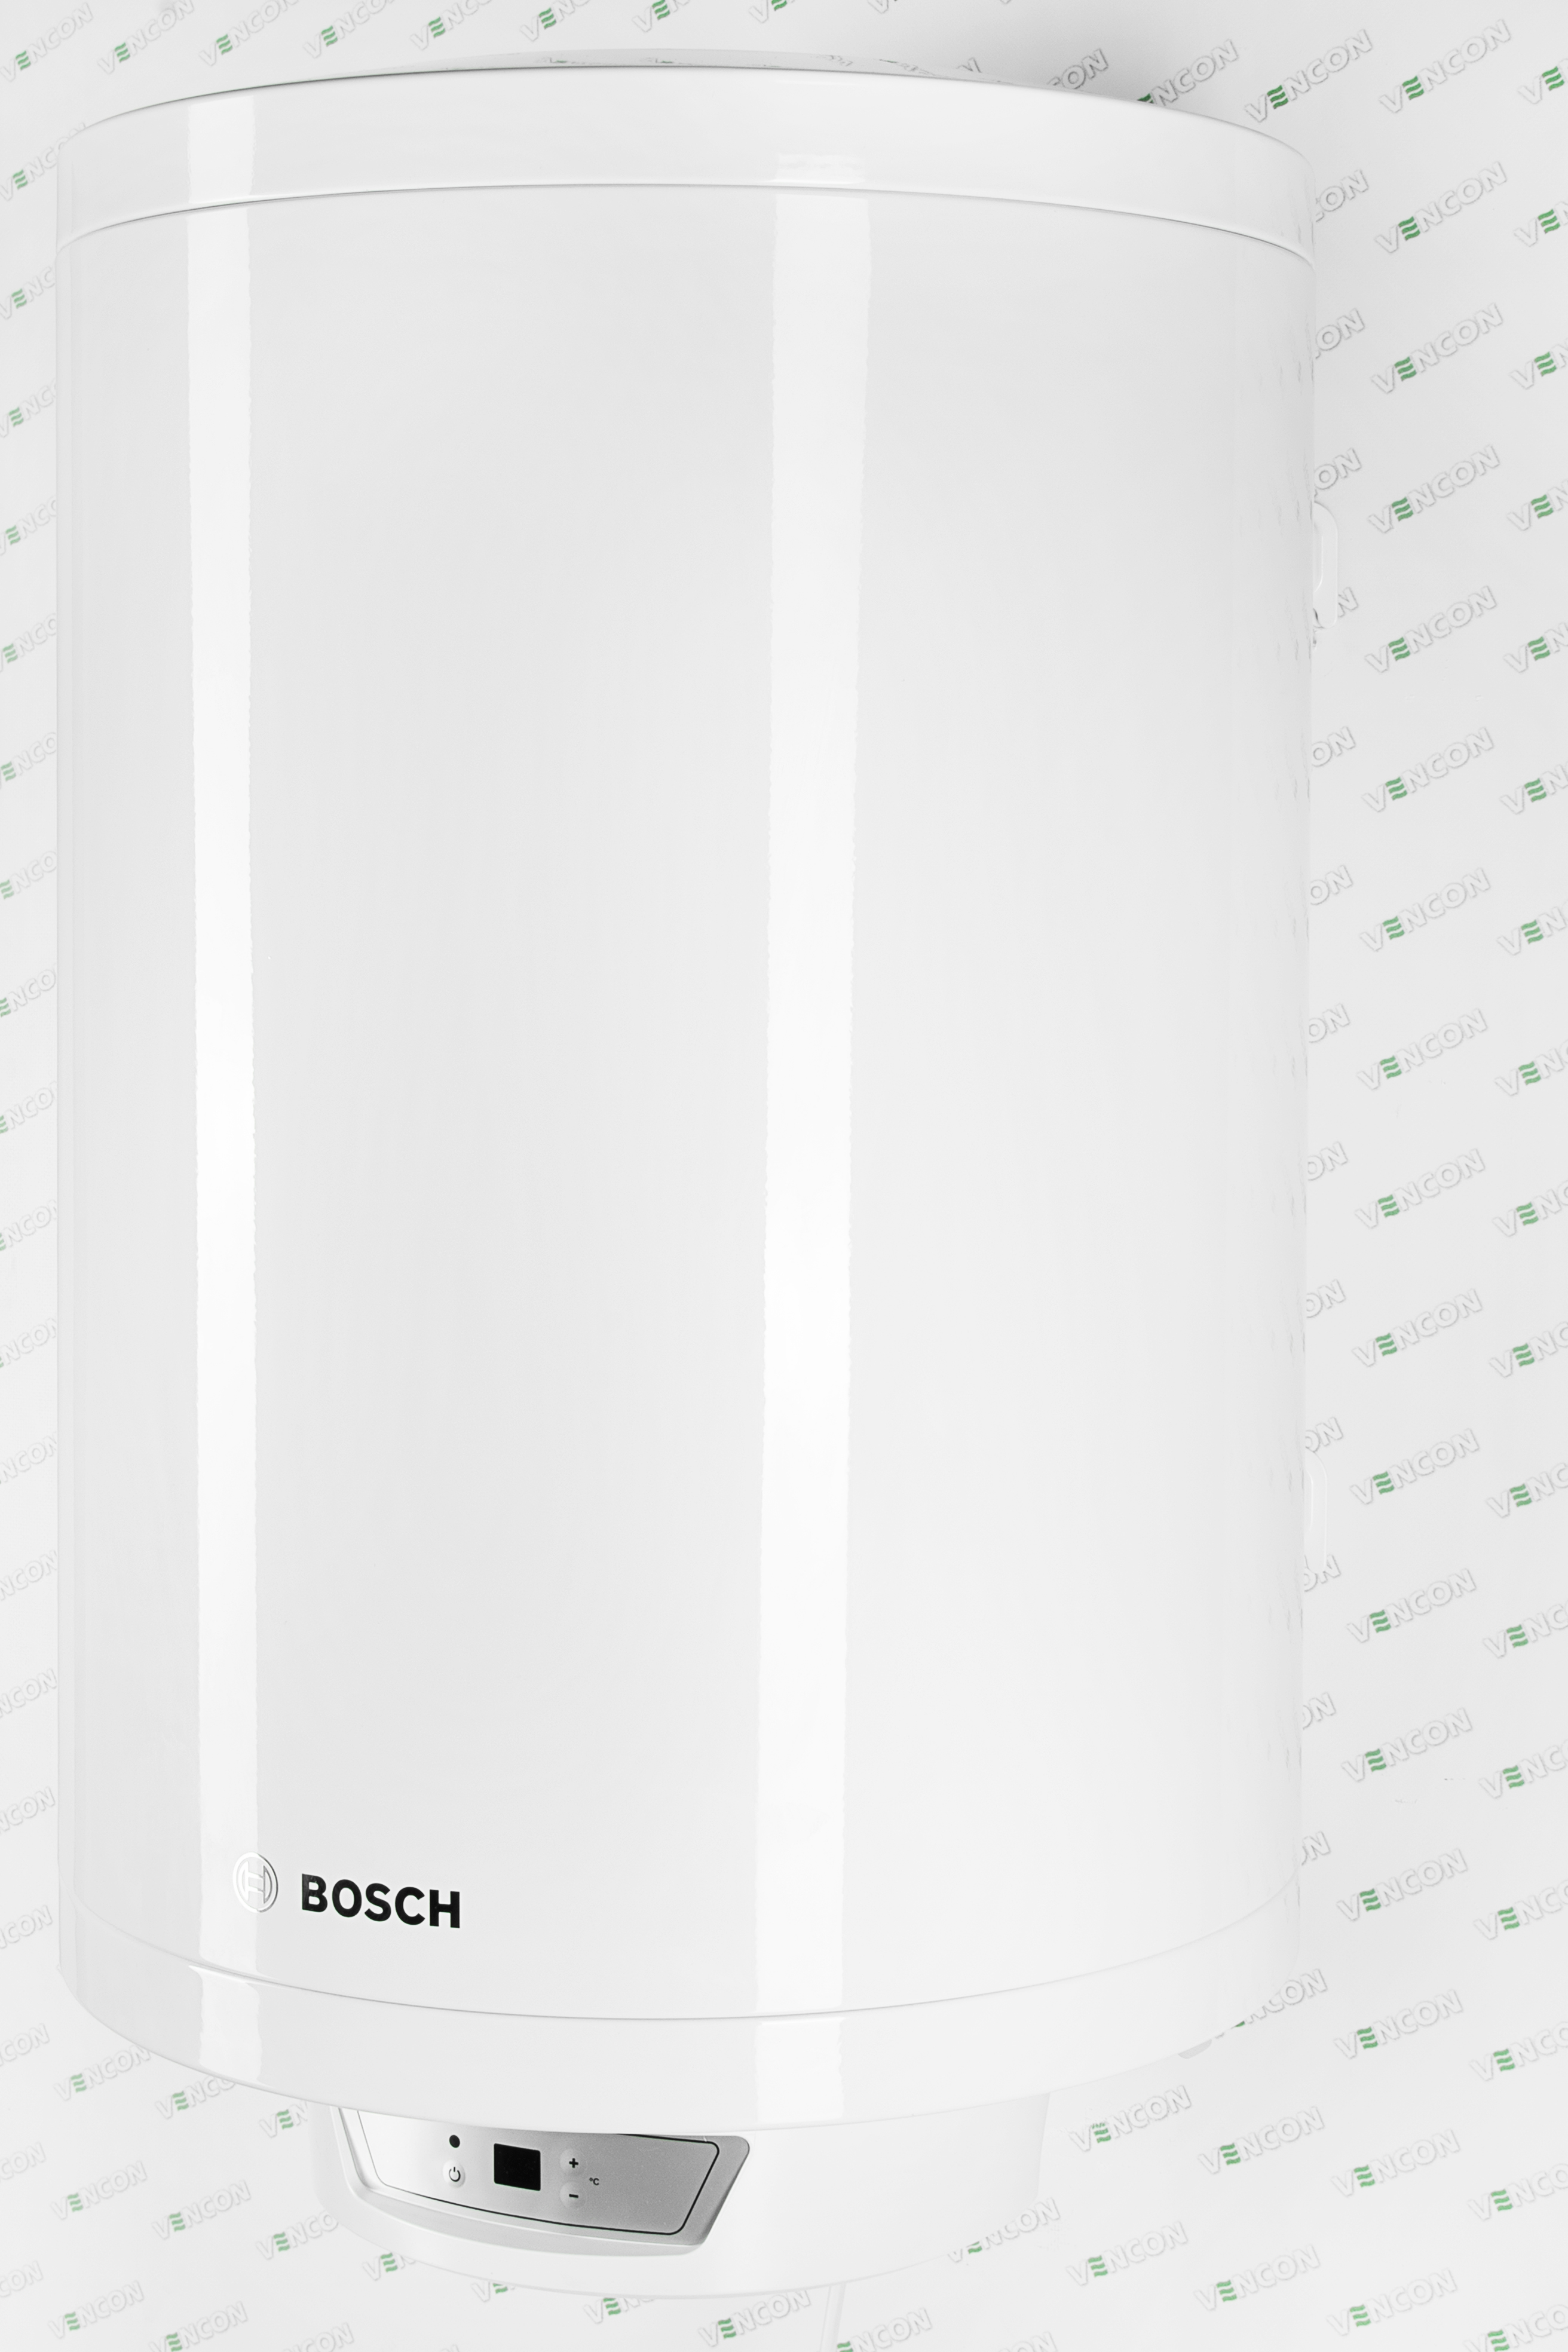 продаём Bosch Tronic 8000T ES 080-5 2000W BO H1X-EDWRB (7736503147) в Украине - фото 4